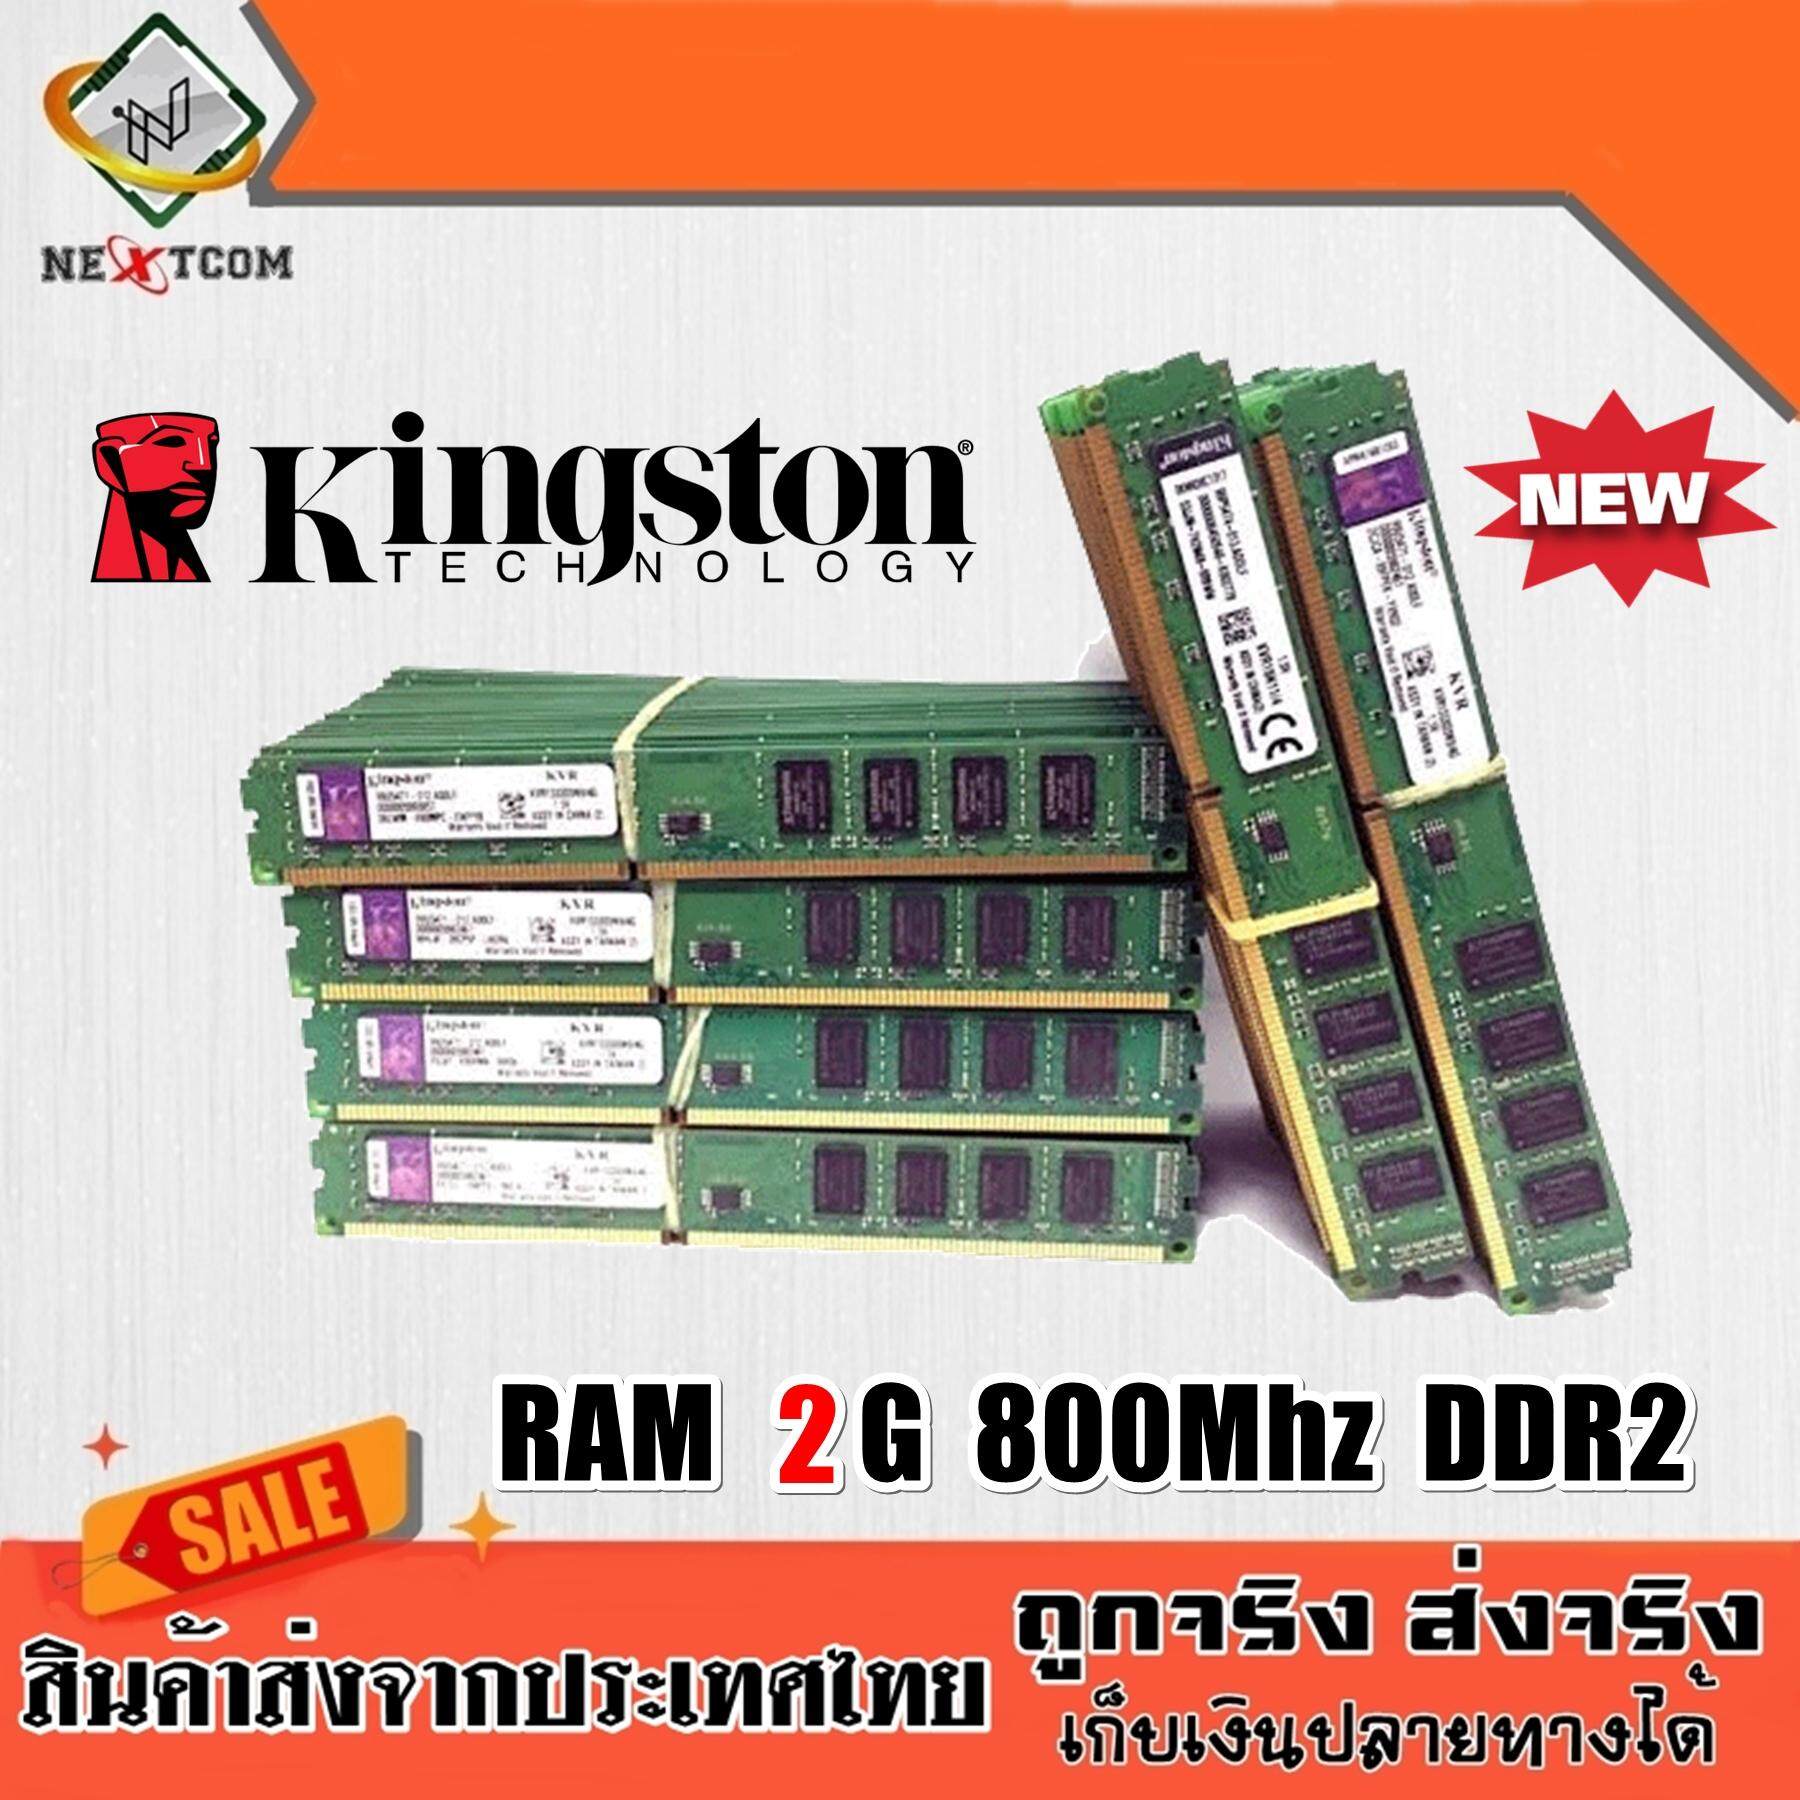 แรม RAM Kingston 2G 800Mhz DDR2 16ชิพ ( ตัวเตี้ย ) ประกัน 6 เดือน จัดส่งไว